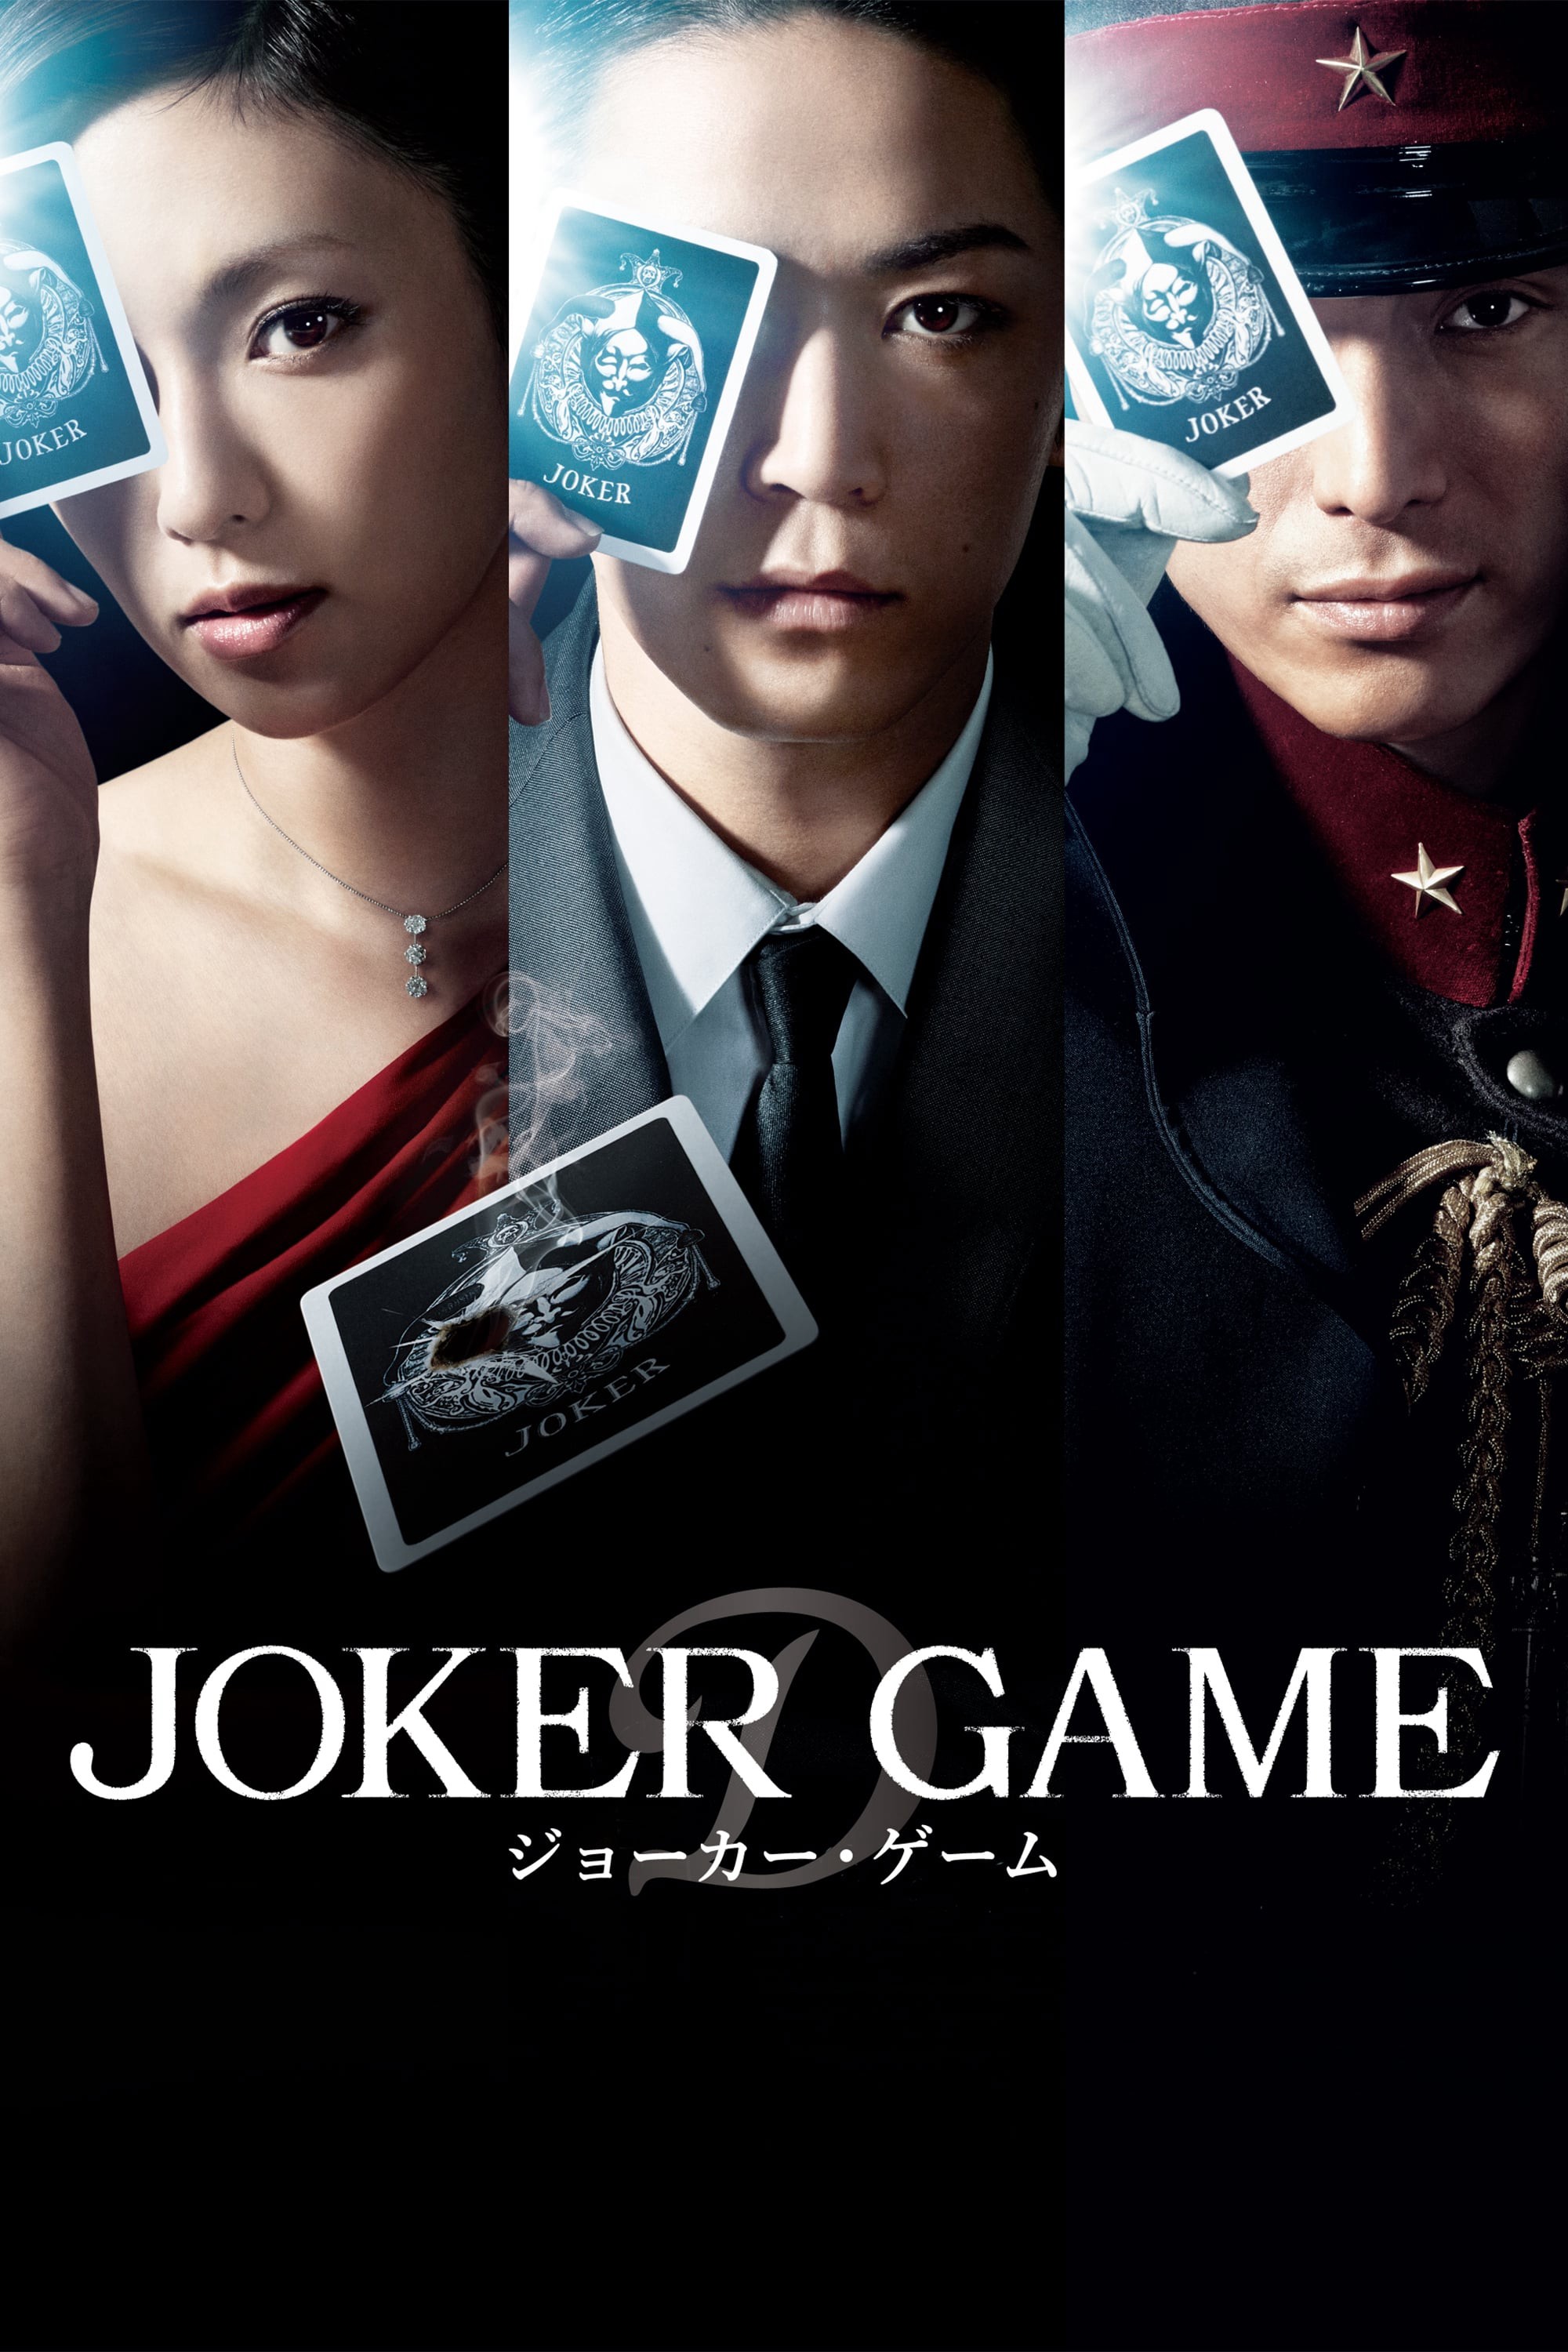 Joker Game 2015